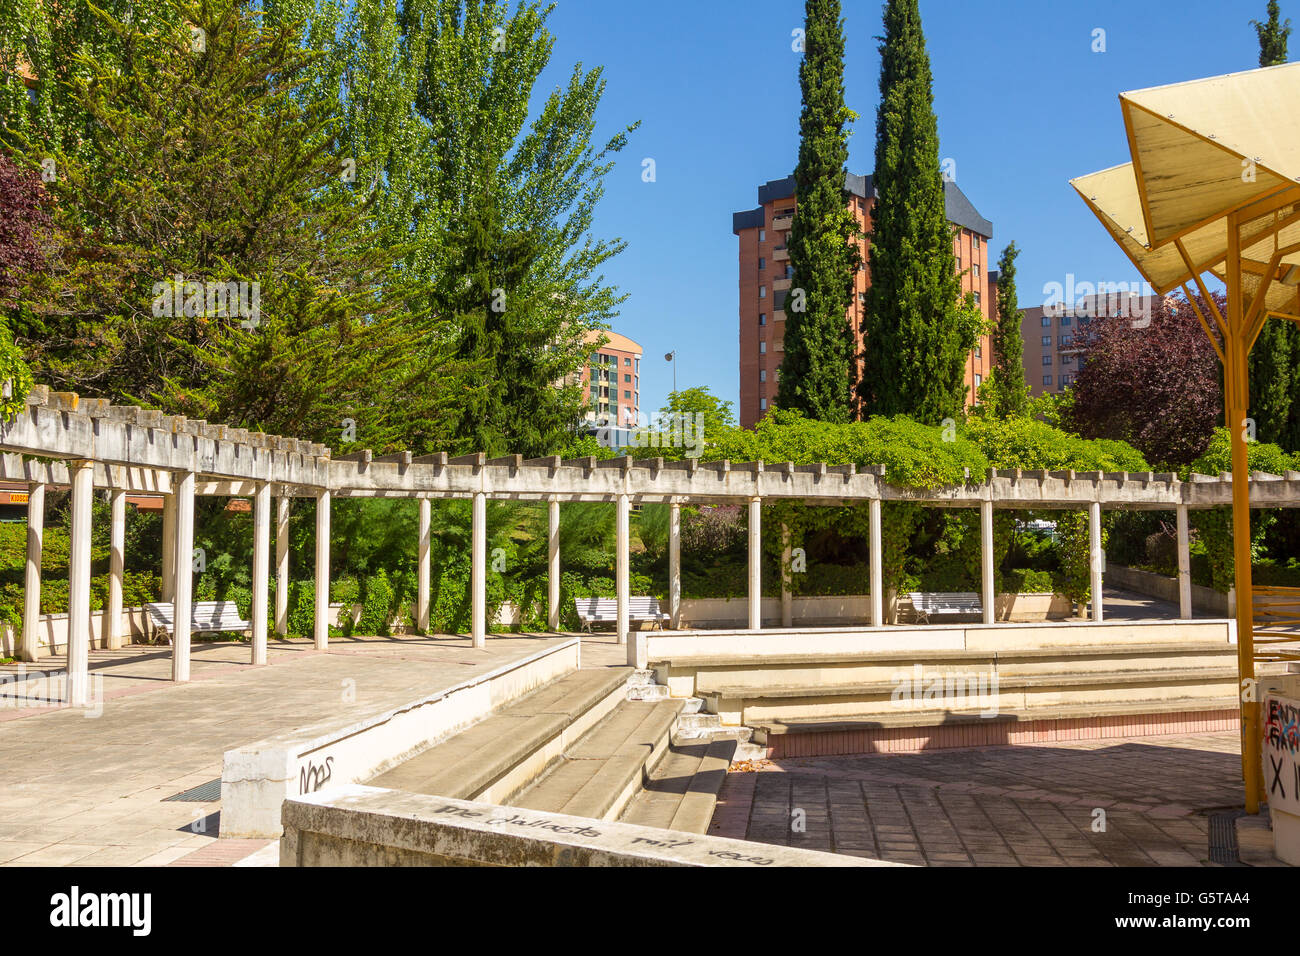 Escaliers et les toits dans un parc de Valladolid, Espagne Banque D'Images